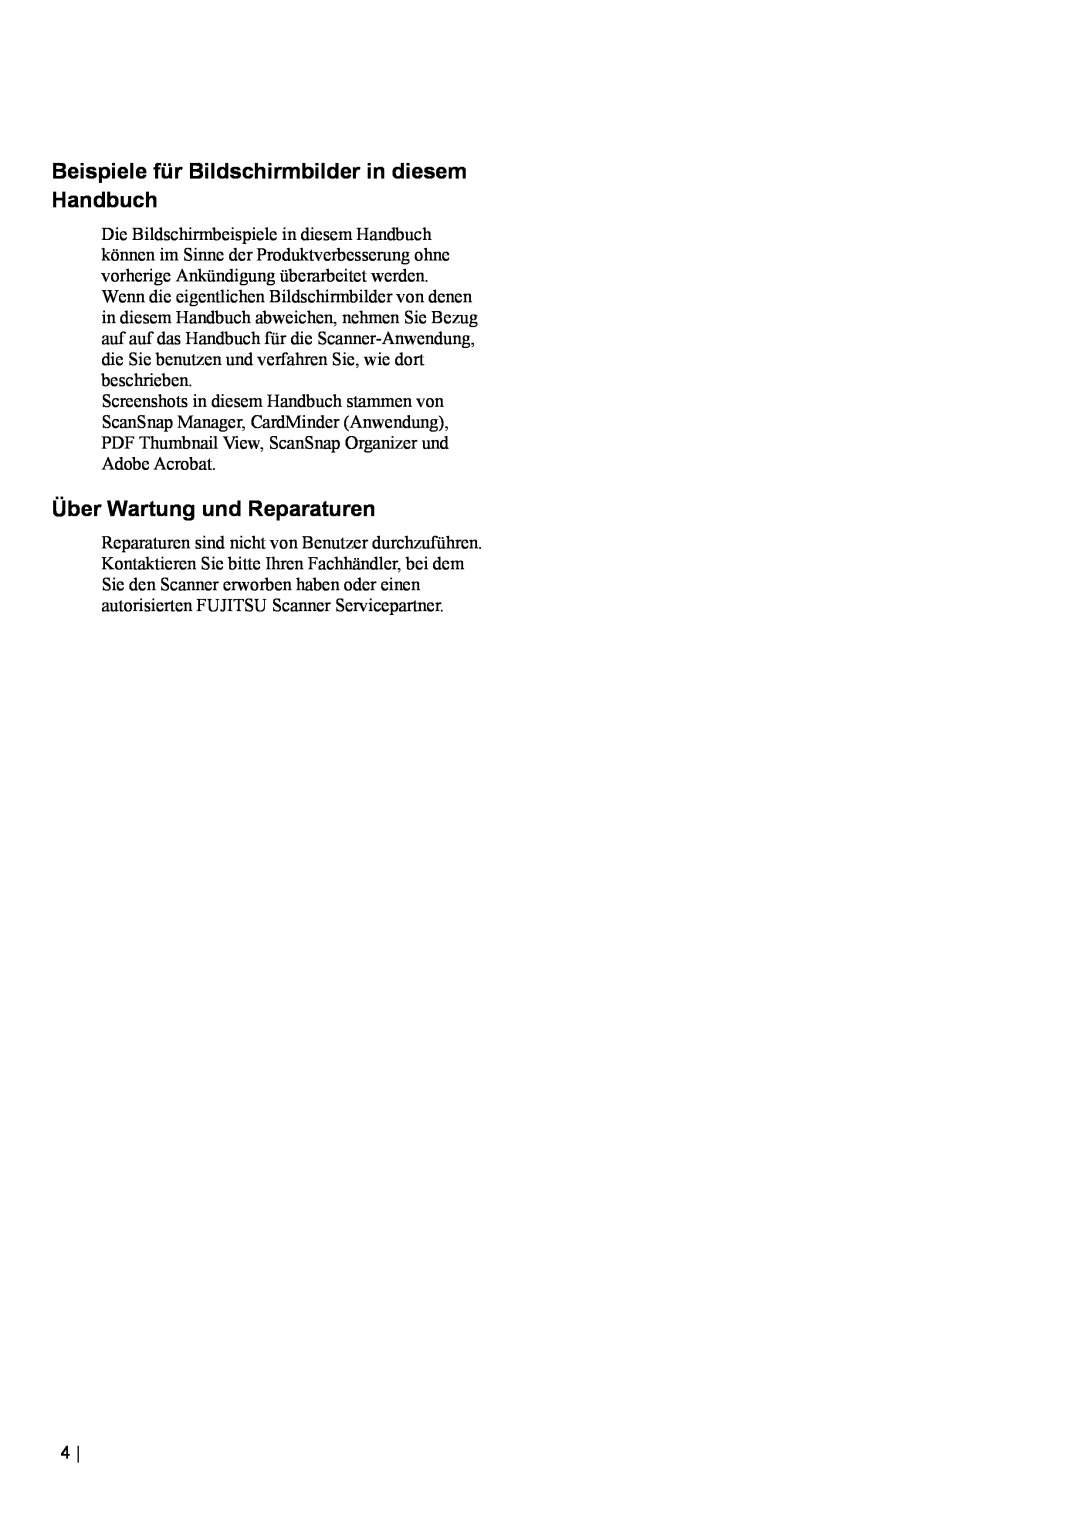 Fujitsu fi-5110EOX2 manual Beispiele für Bildschirmbilder in diesem Handbuch, Über Wartung und Reparaturen 